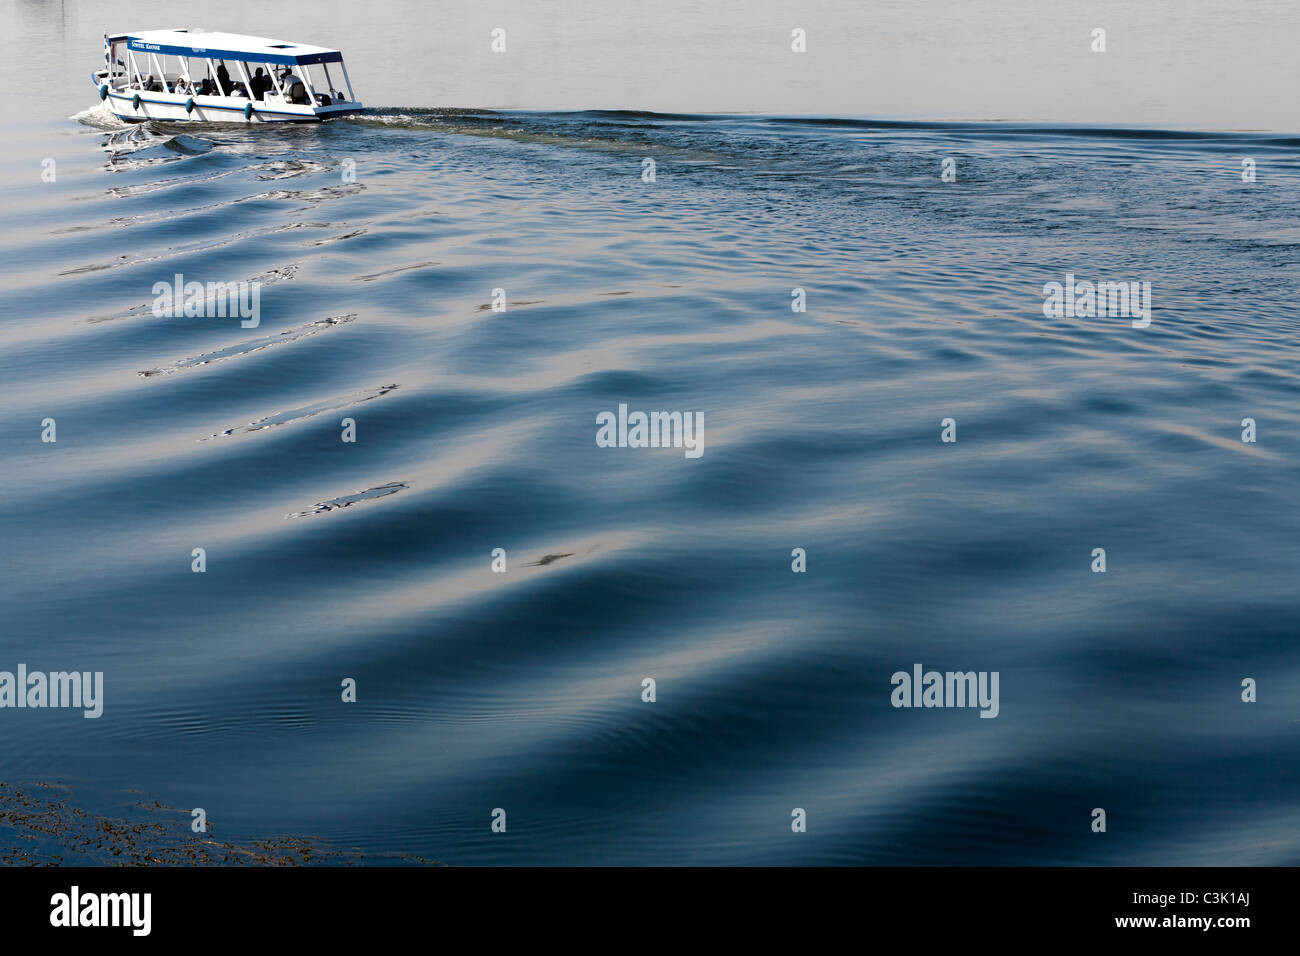 Ein Nil Wasser Taxi oben links Schuss verlassen großen tiefblauen Zuge, in ruhigem Wasser hinter, Ägypten, Afrika Stockfoto